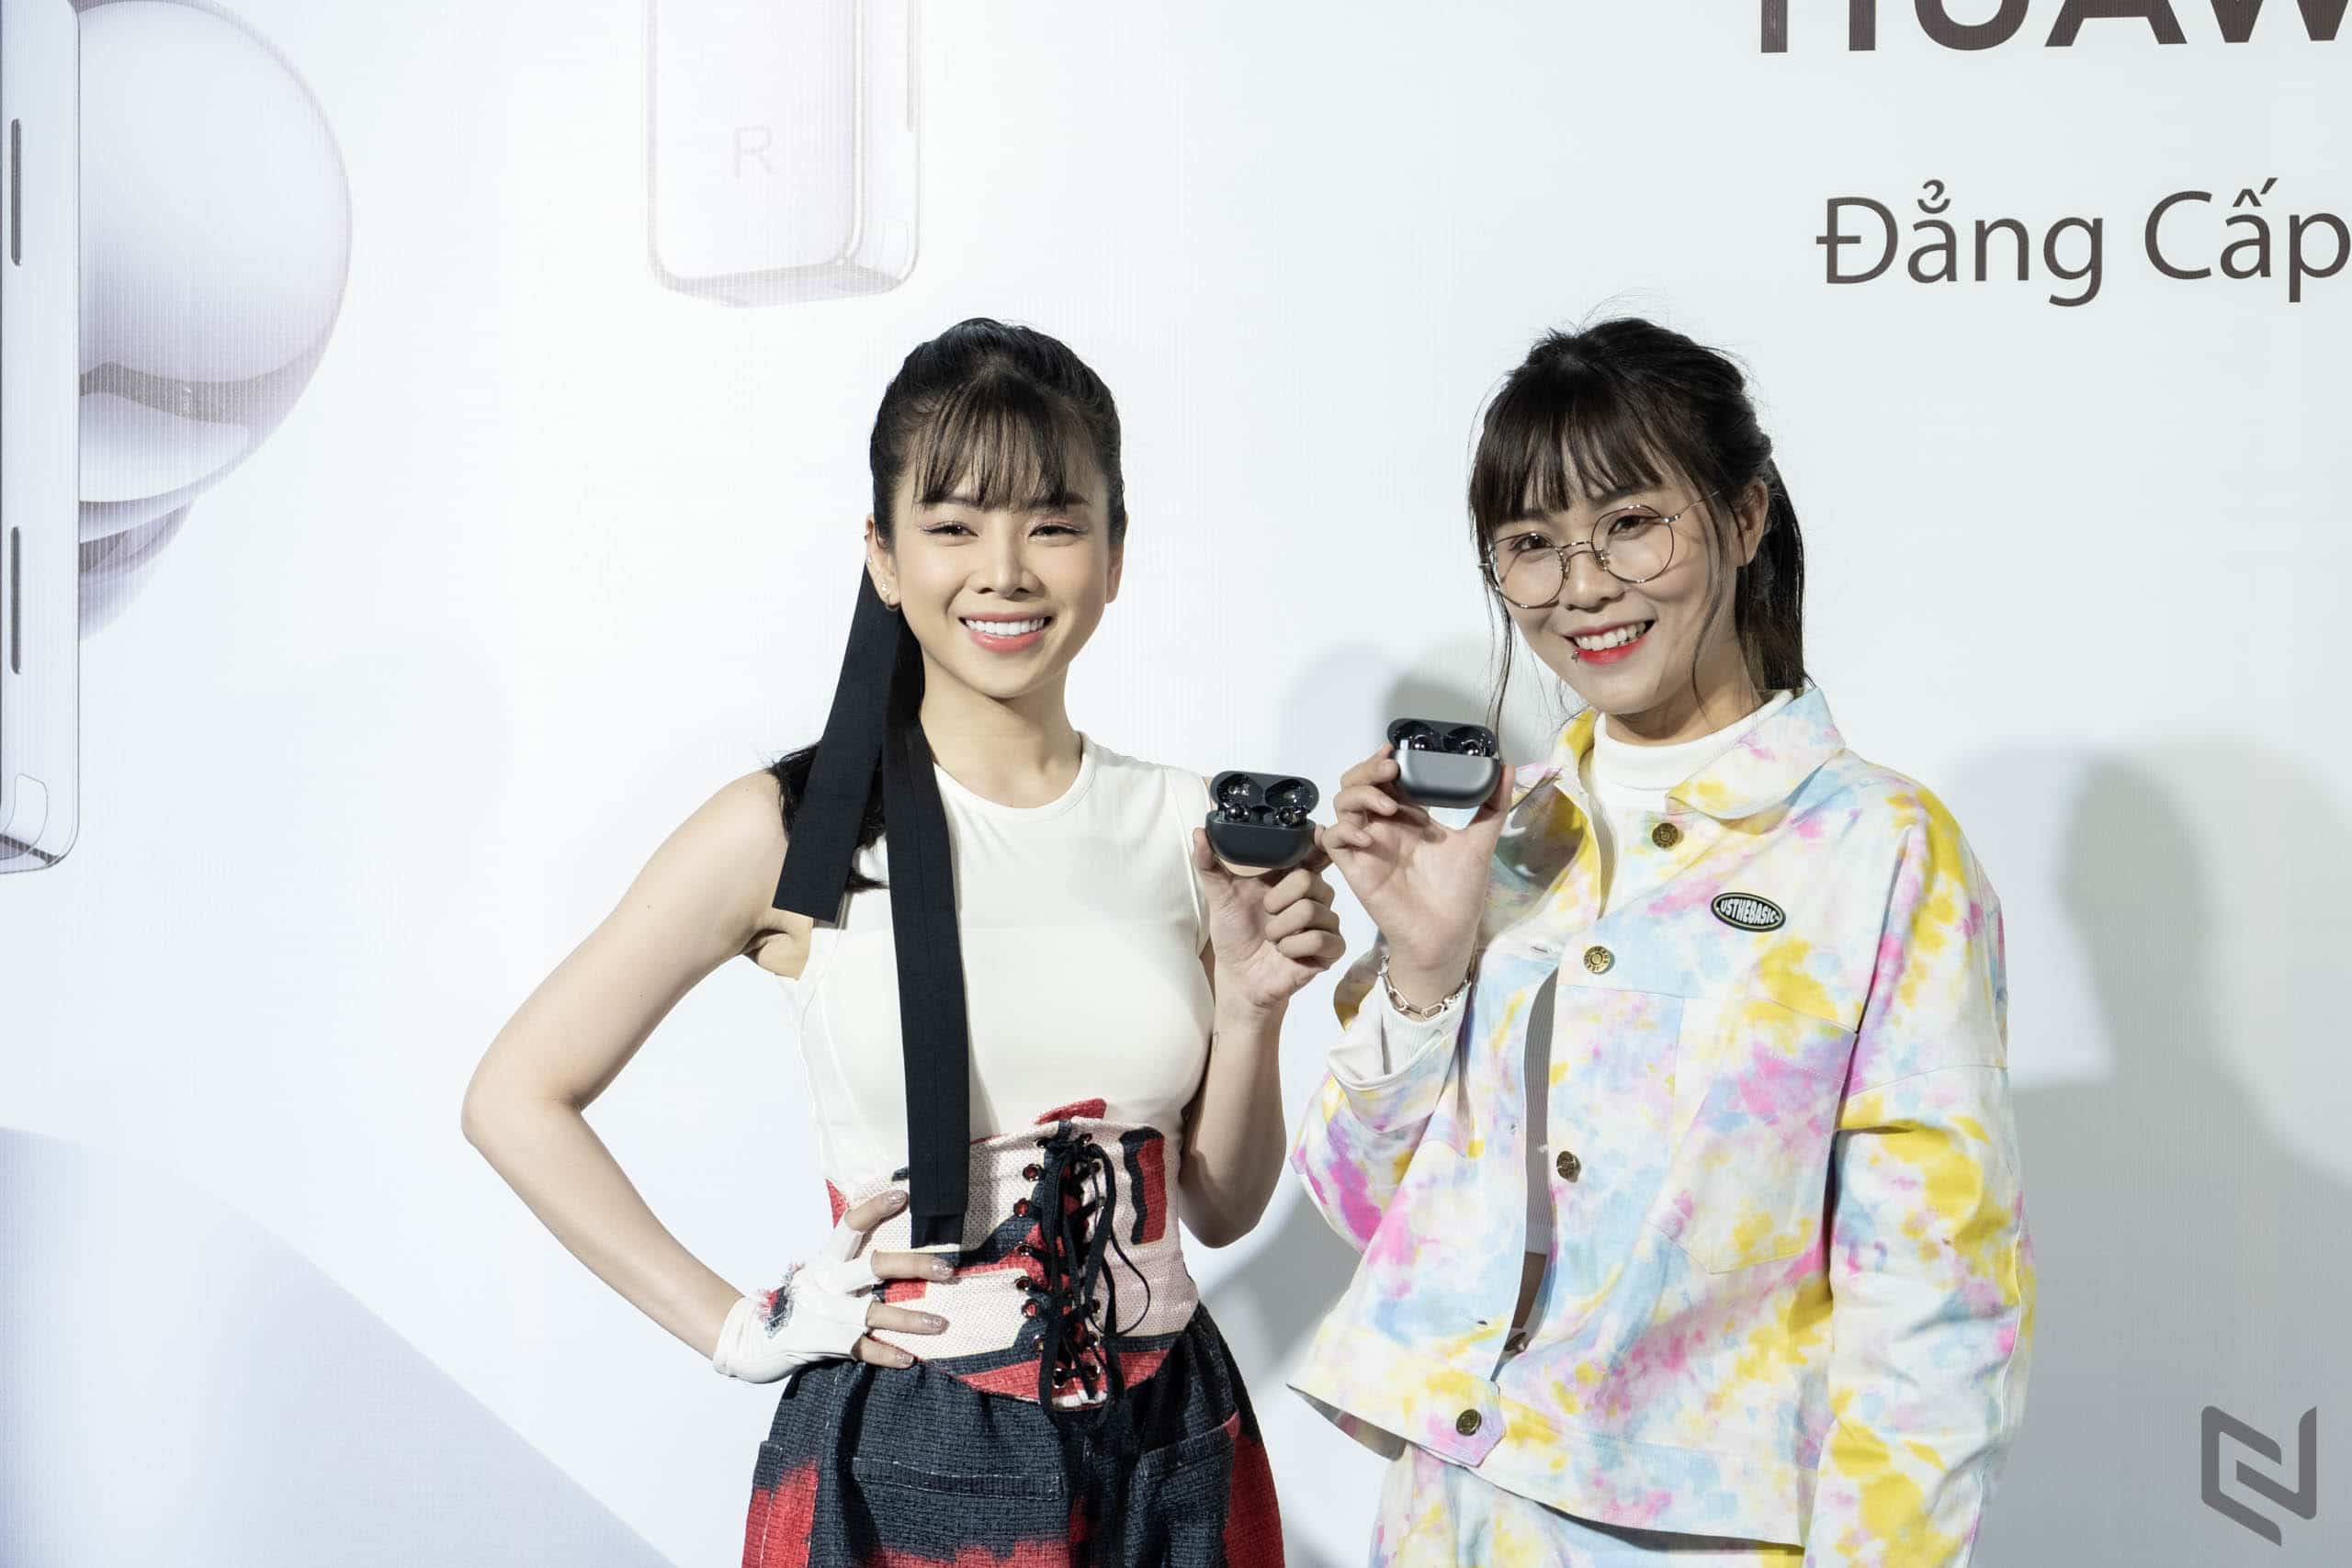 Ra mắt tai nghe không dây chống ồn thông minh Huawei FreeBuds Pro tại Việt Nam